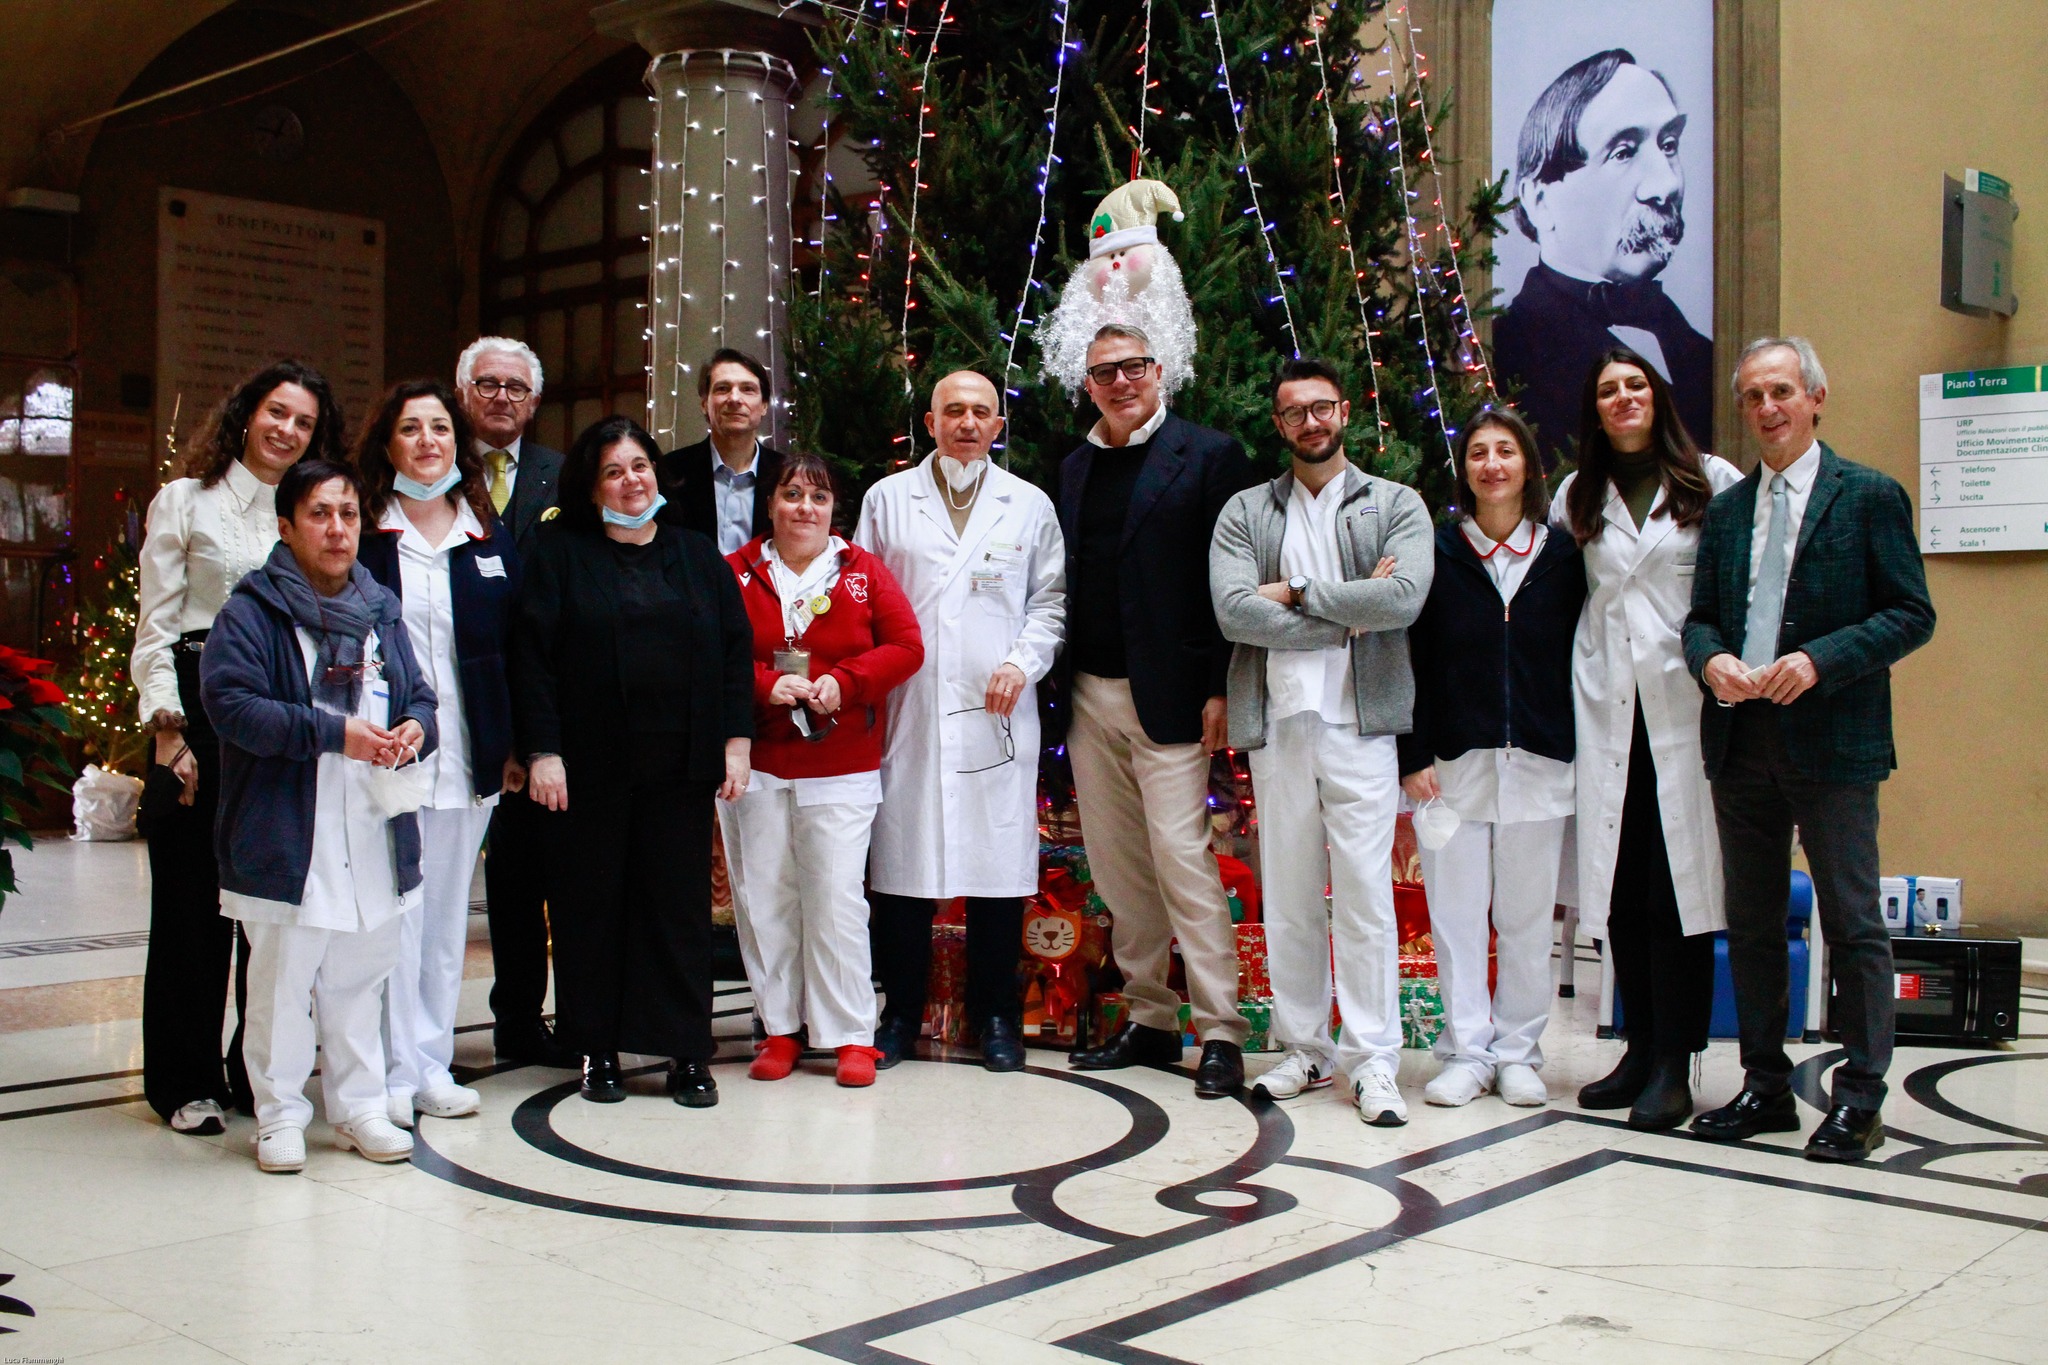 Consegna dei doni natalizi della Fondazione Istituto Ortopedico Rizzoli